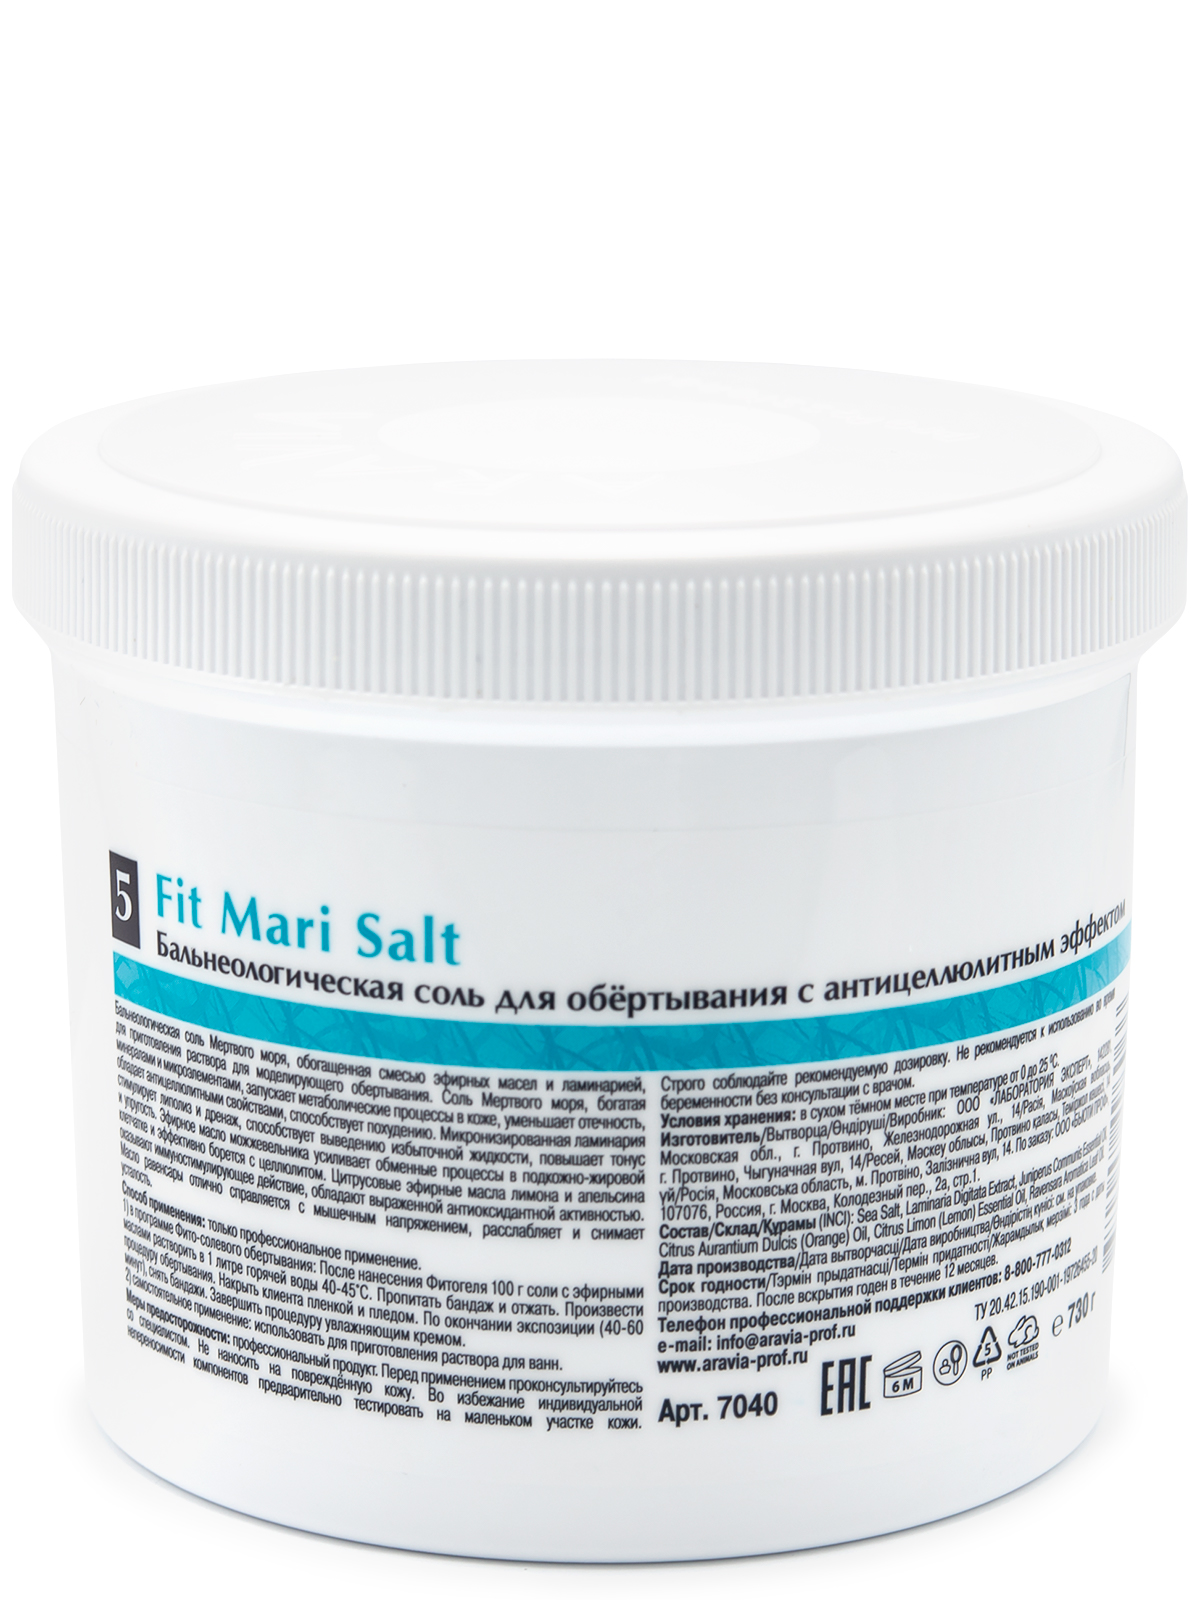 Бальнеологическая соль для обёртывания с антицеллюлитным эффектом Fit Mari Salt 730 г, ARAVIA Organic